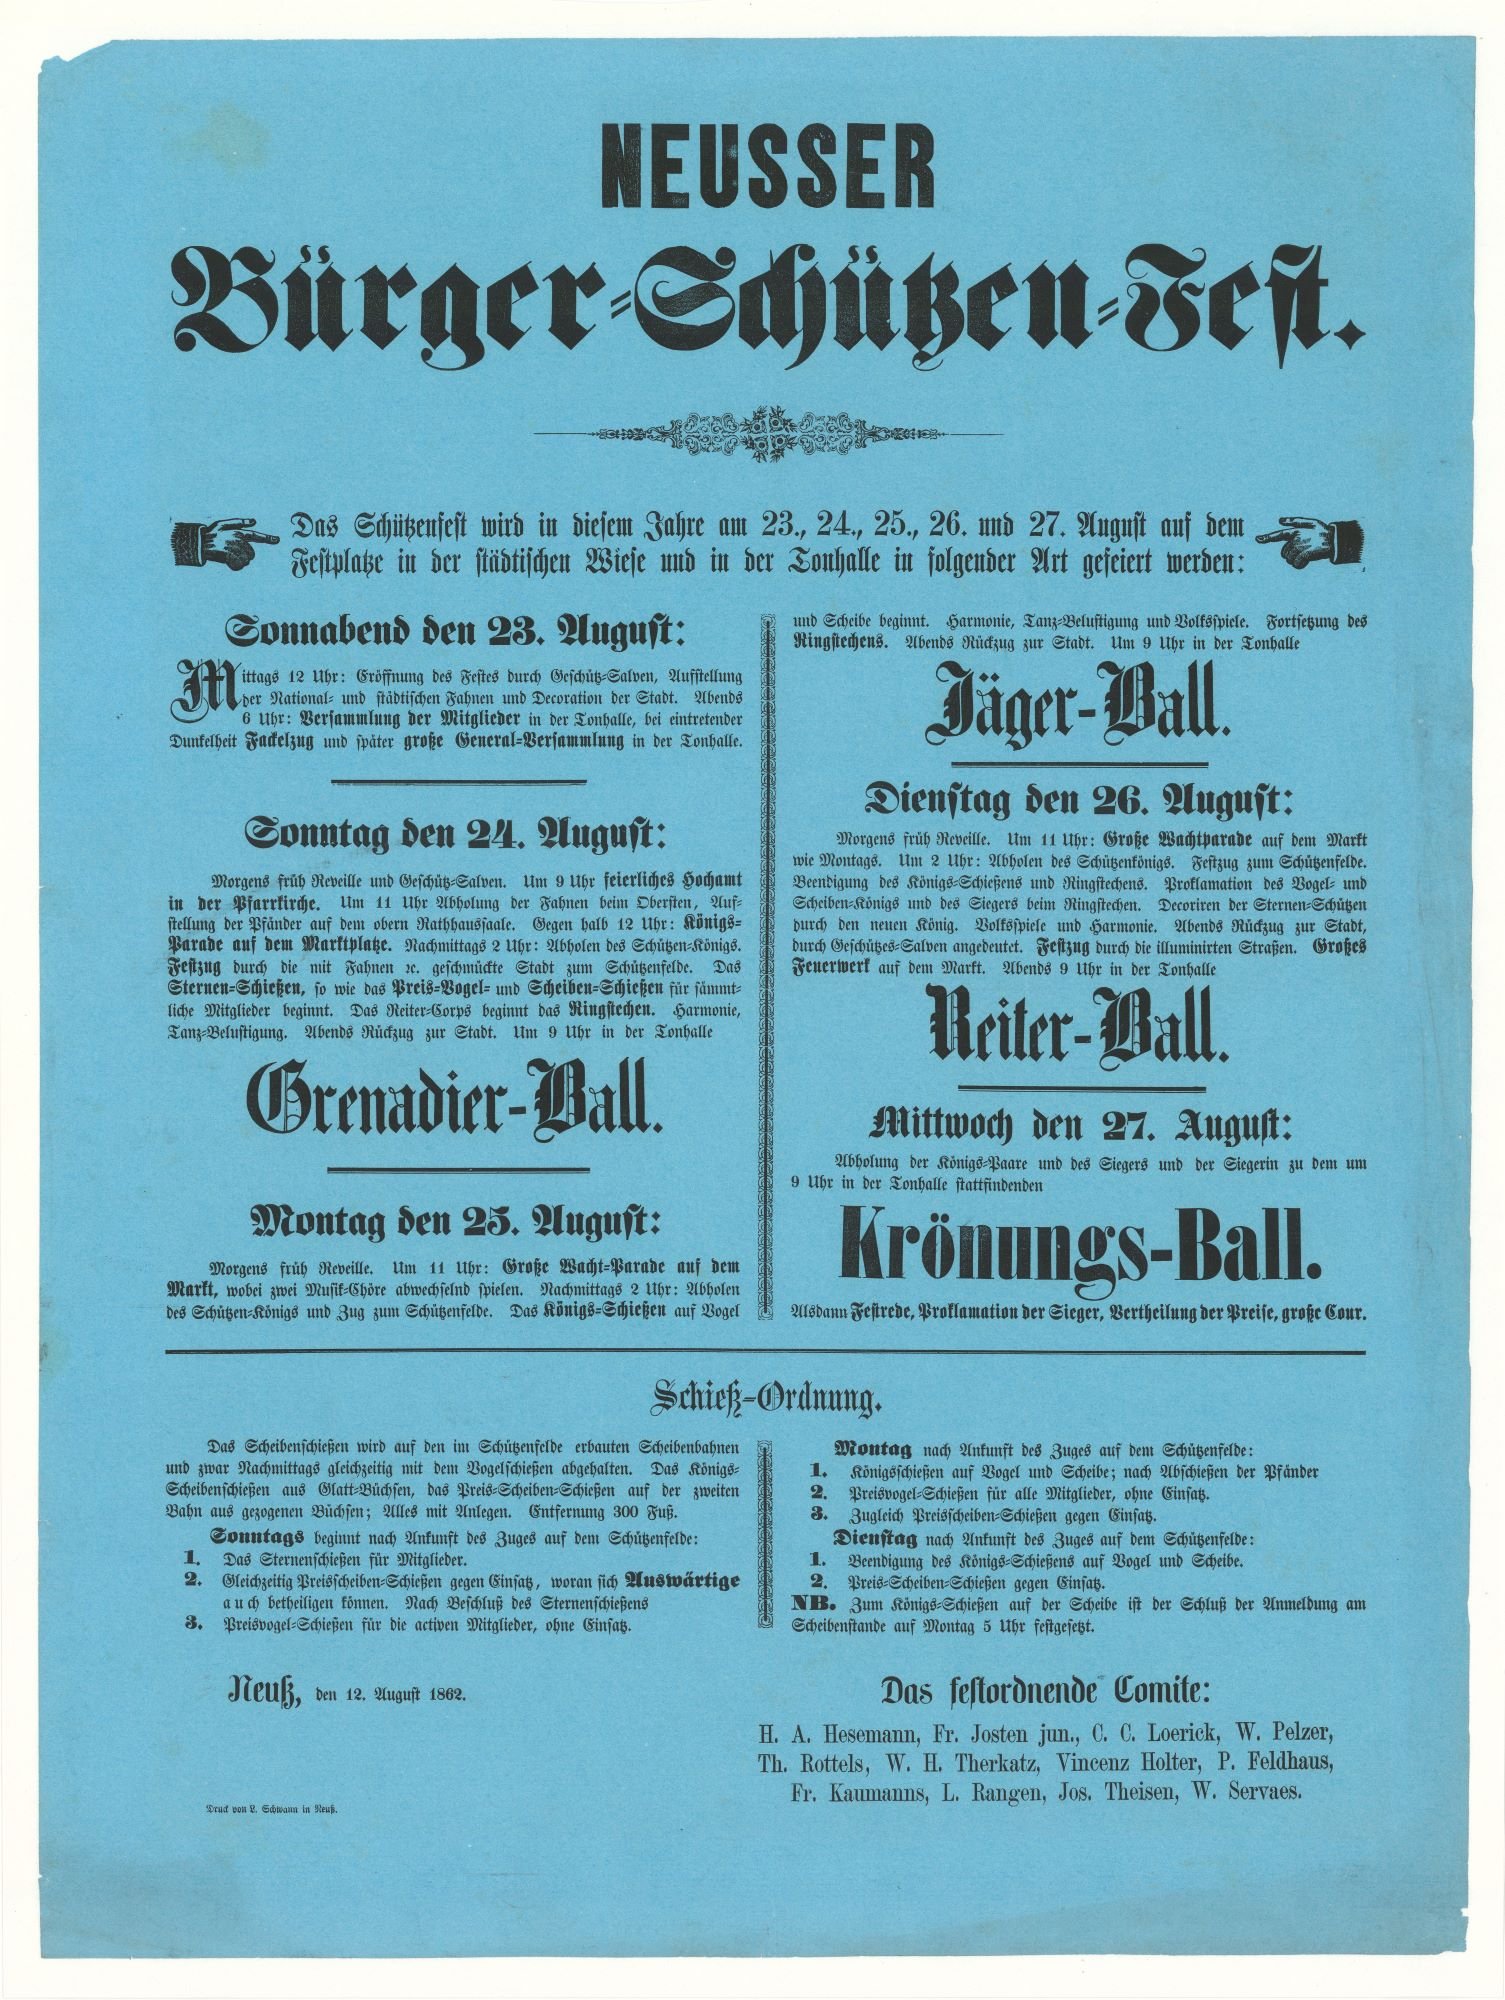 Festplakat Schützenfest Neuss 1862 (Rheinisches Schützenmuseum Neuss CC BY-NC-SA)